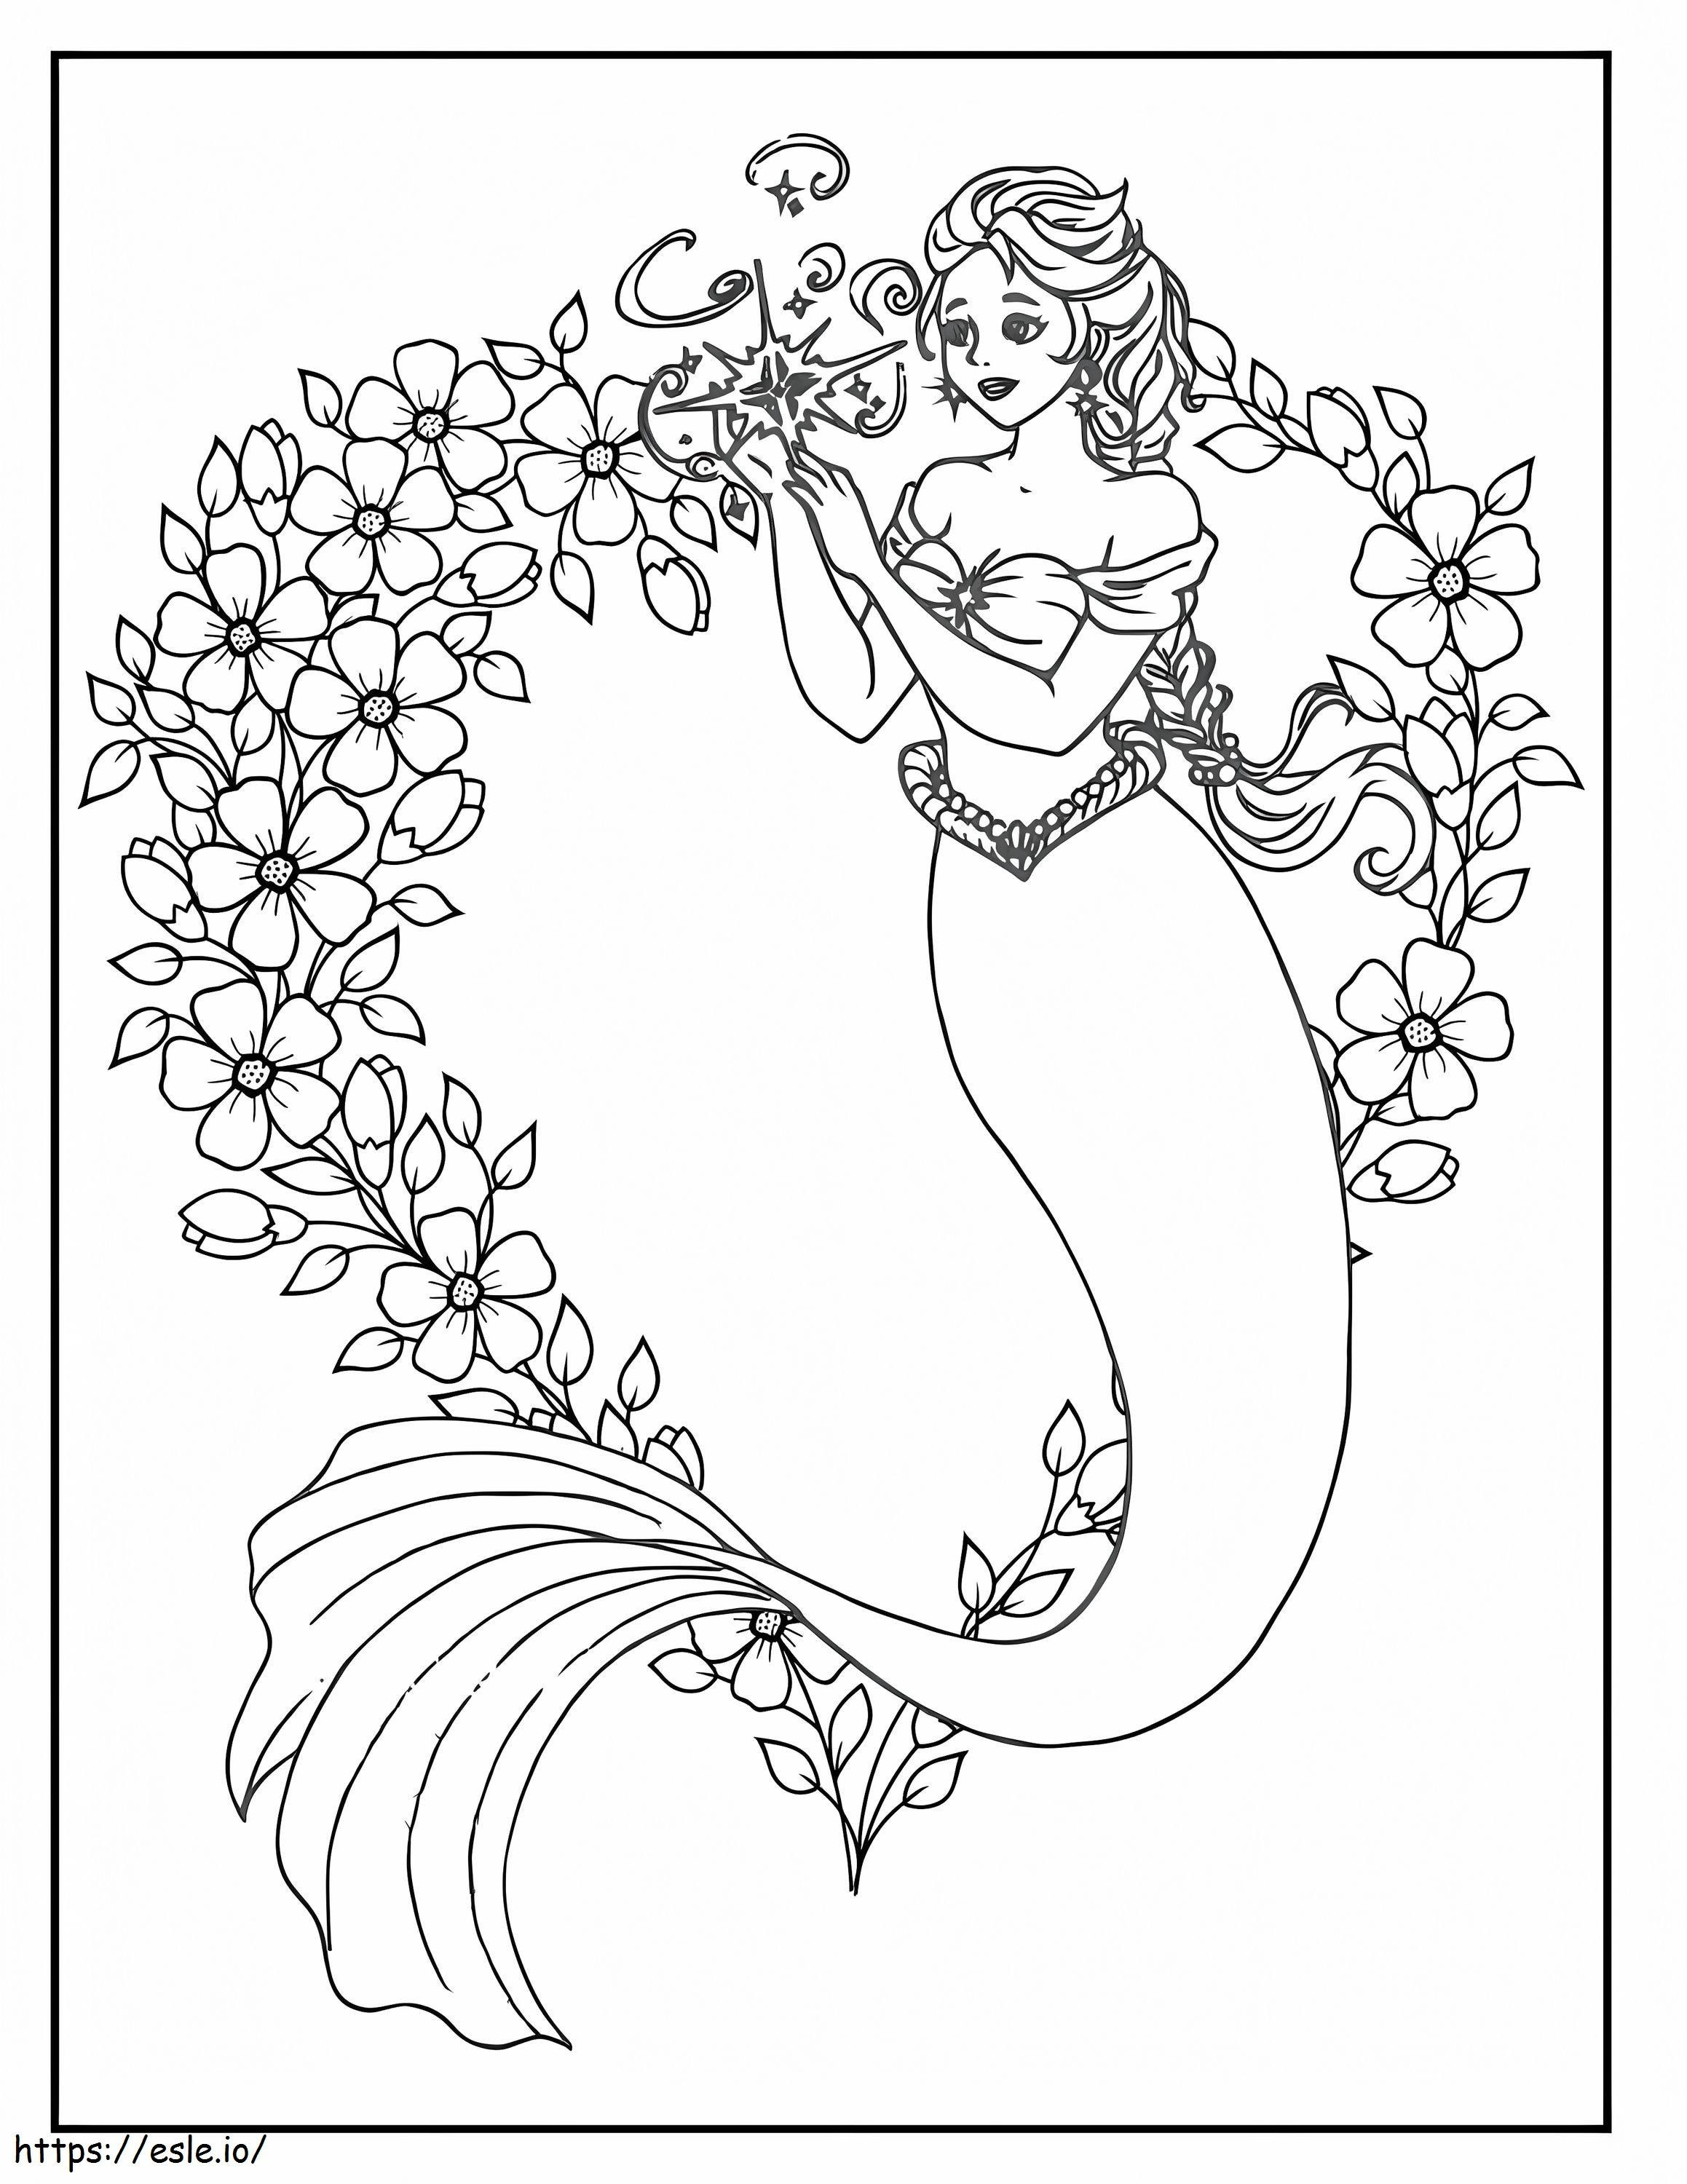 Meerjungfrau mit Blume ausmalbilder